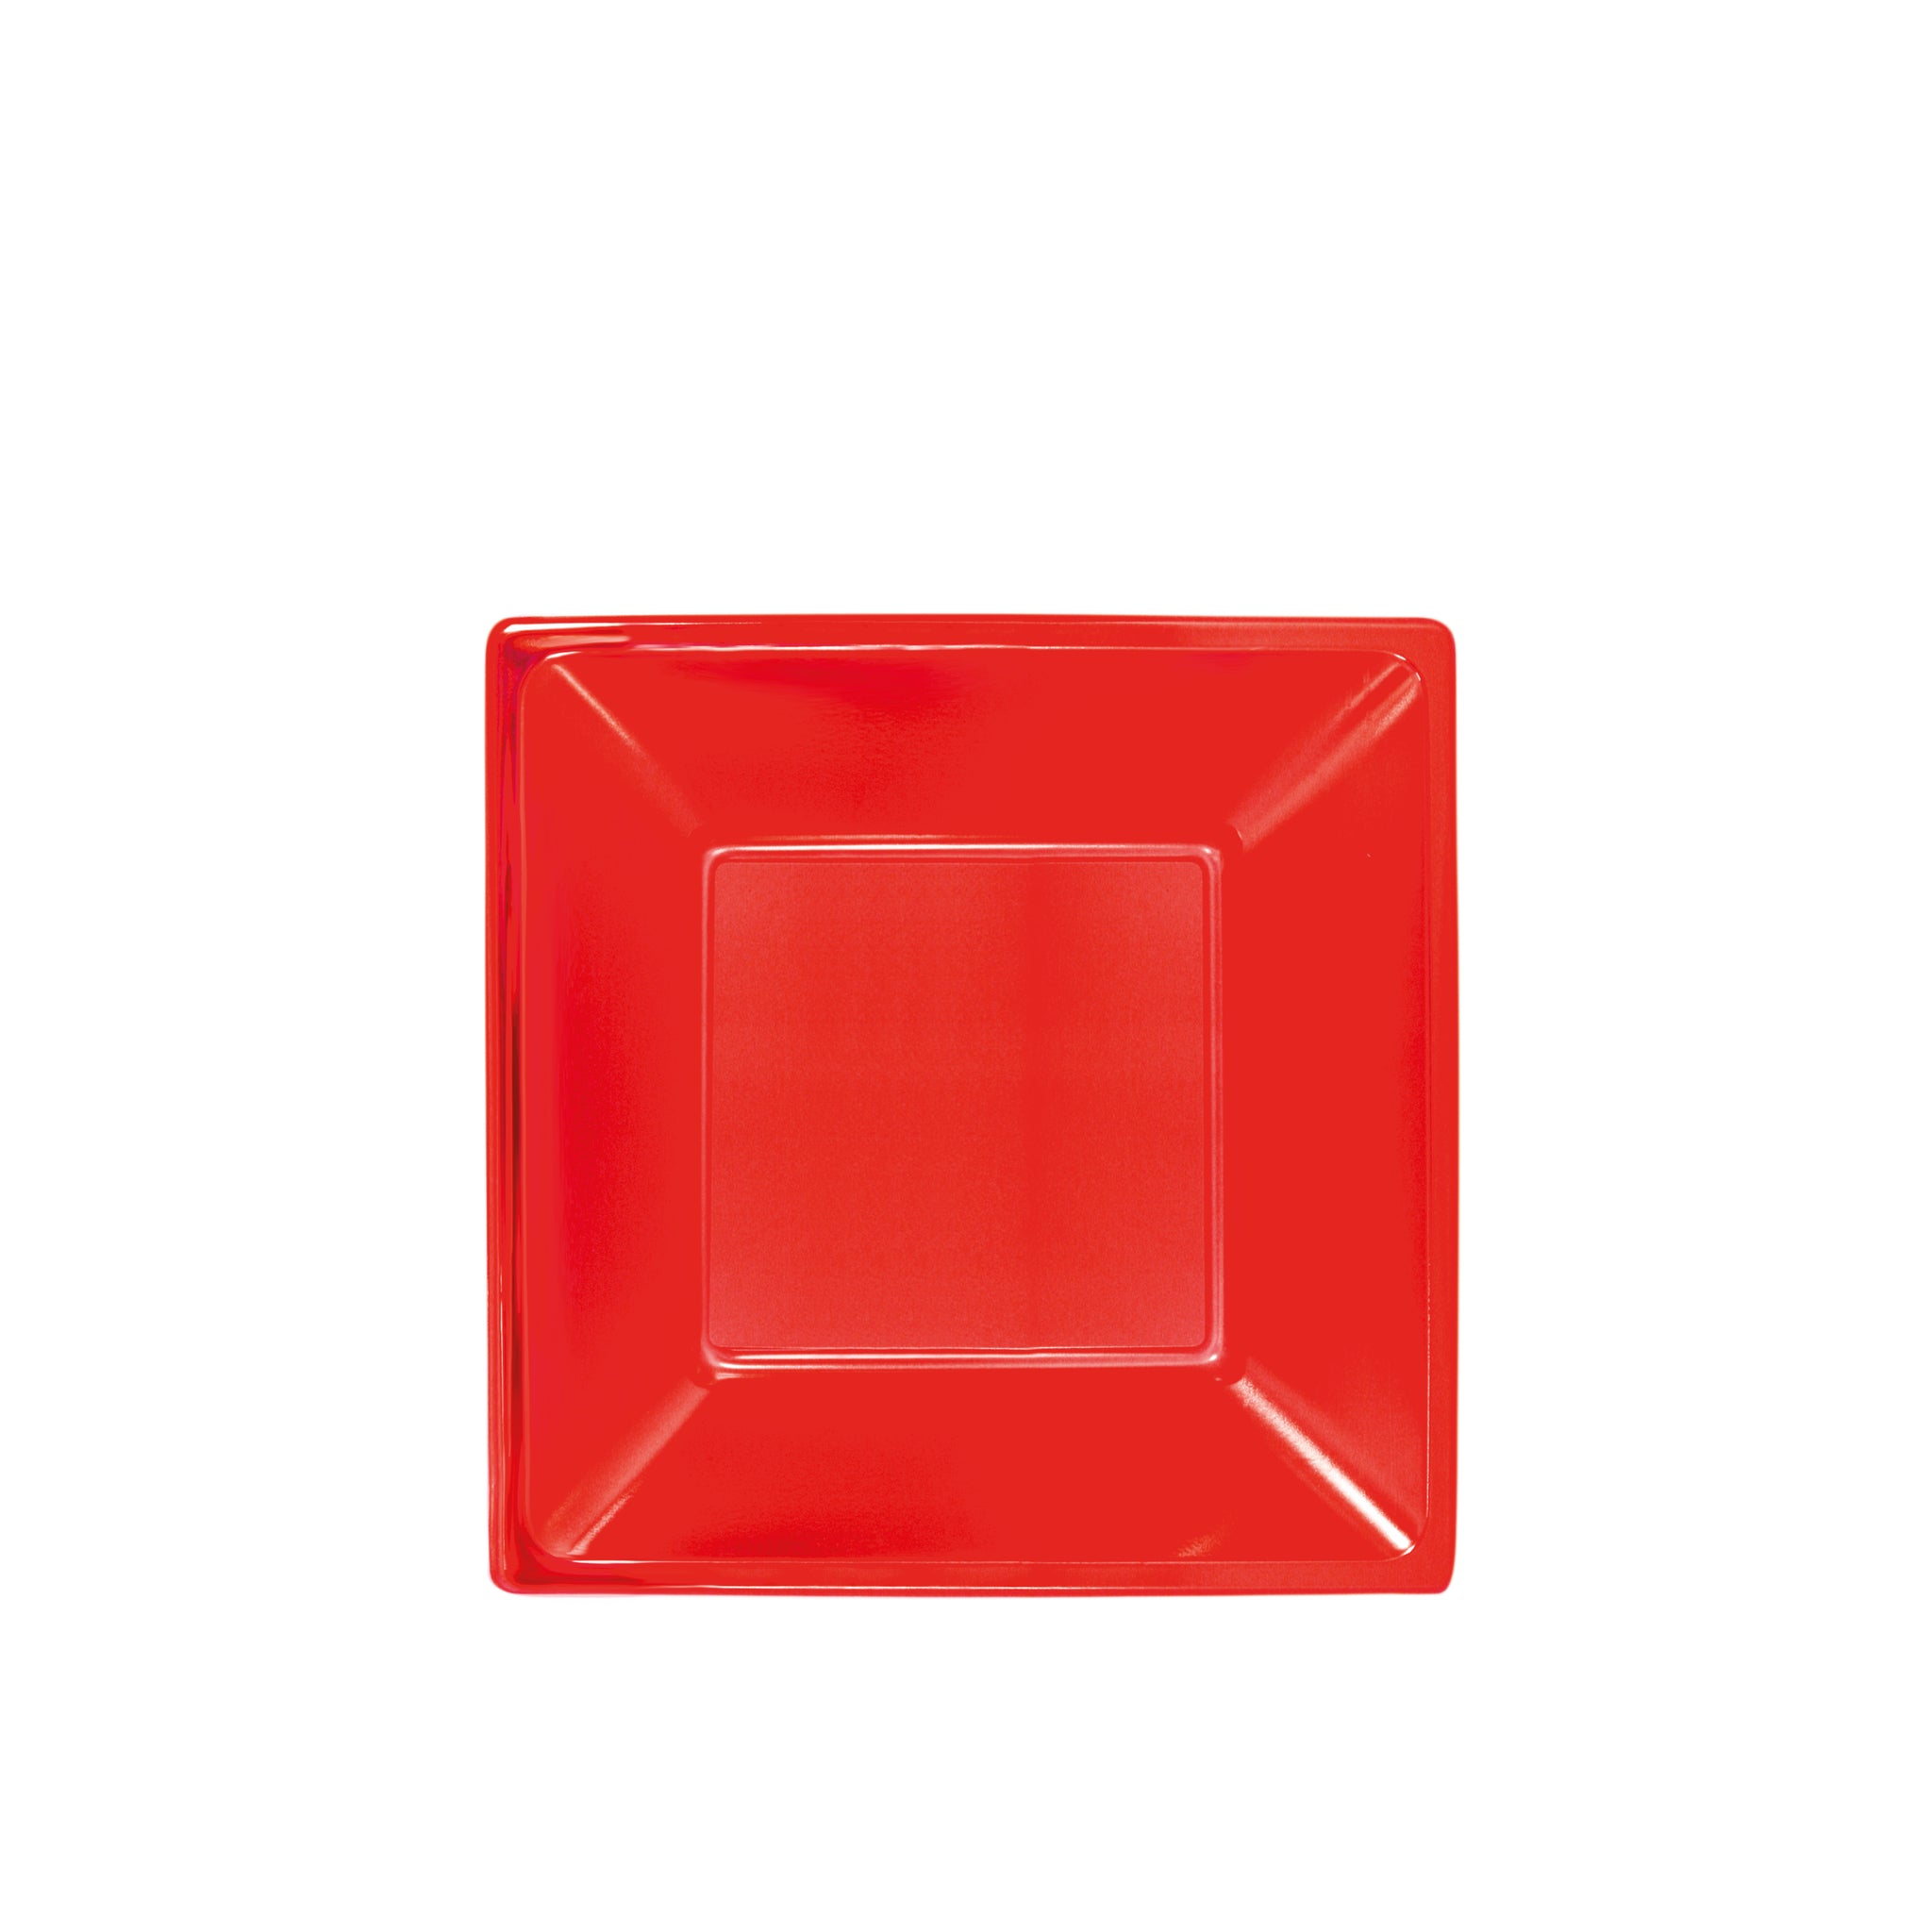 Plato Plástico Hondo Cuadrado 17 x 17 cm Rojo